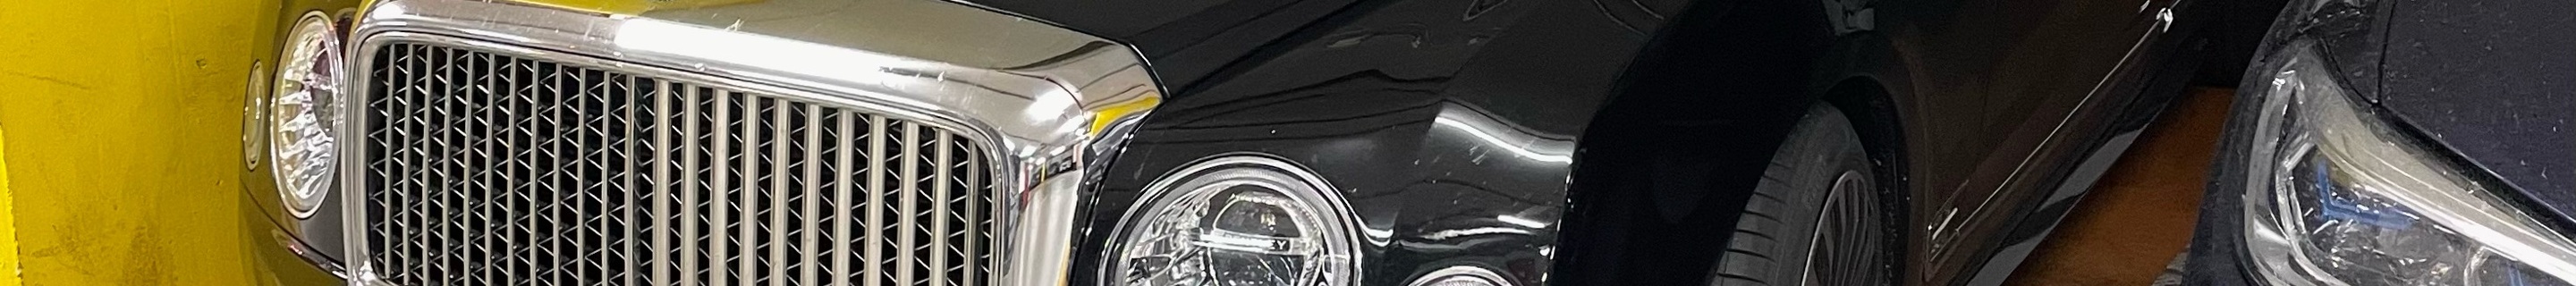 Bentley Mansory Mulsanne 2019 Coupé Ares Design